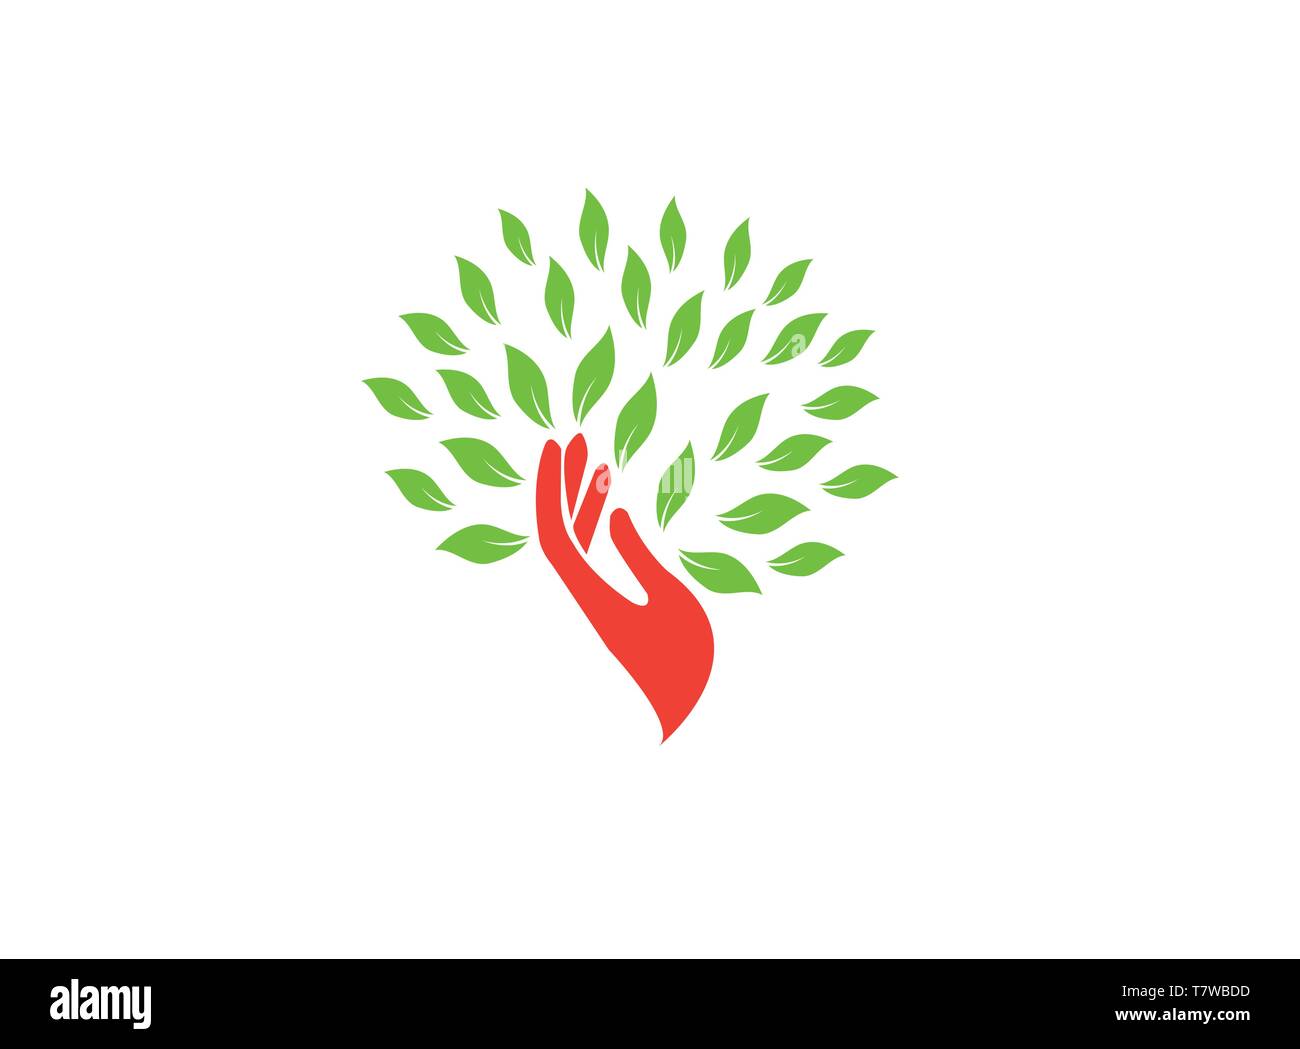 Tronco di albero mano e foglie verdi logo design illustrator, icona della natura Illustrazione Vettoriale